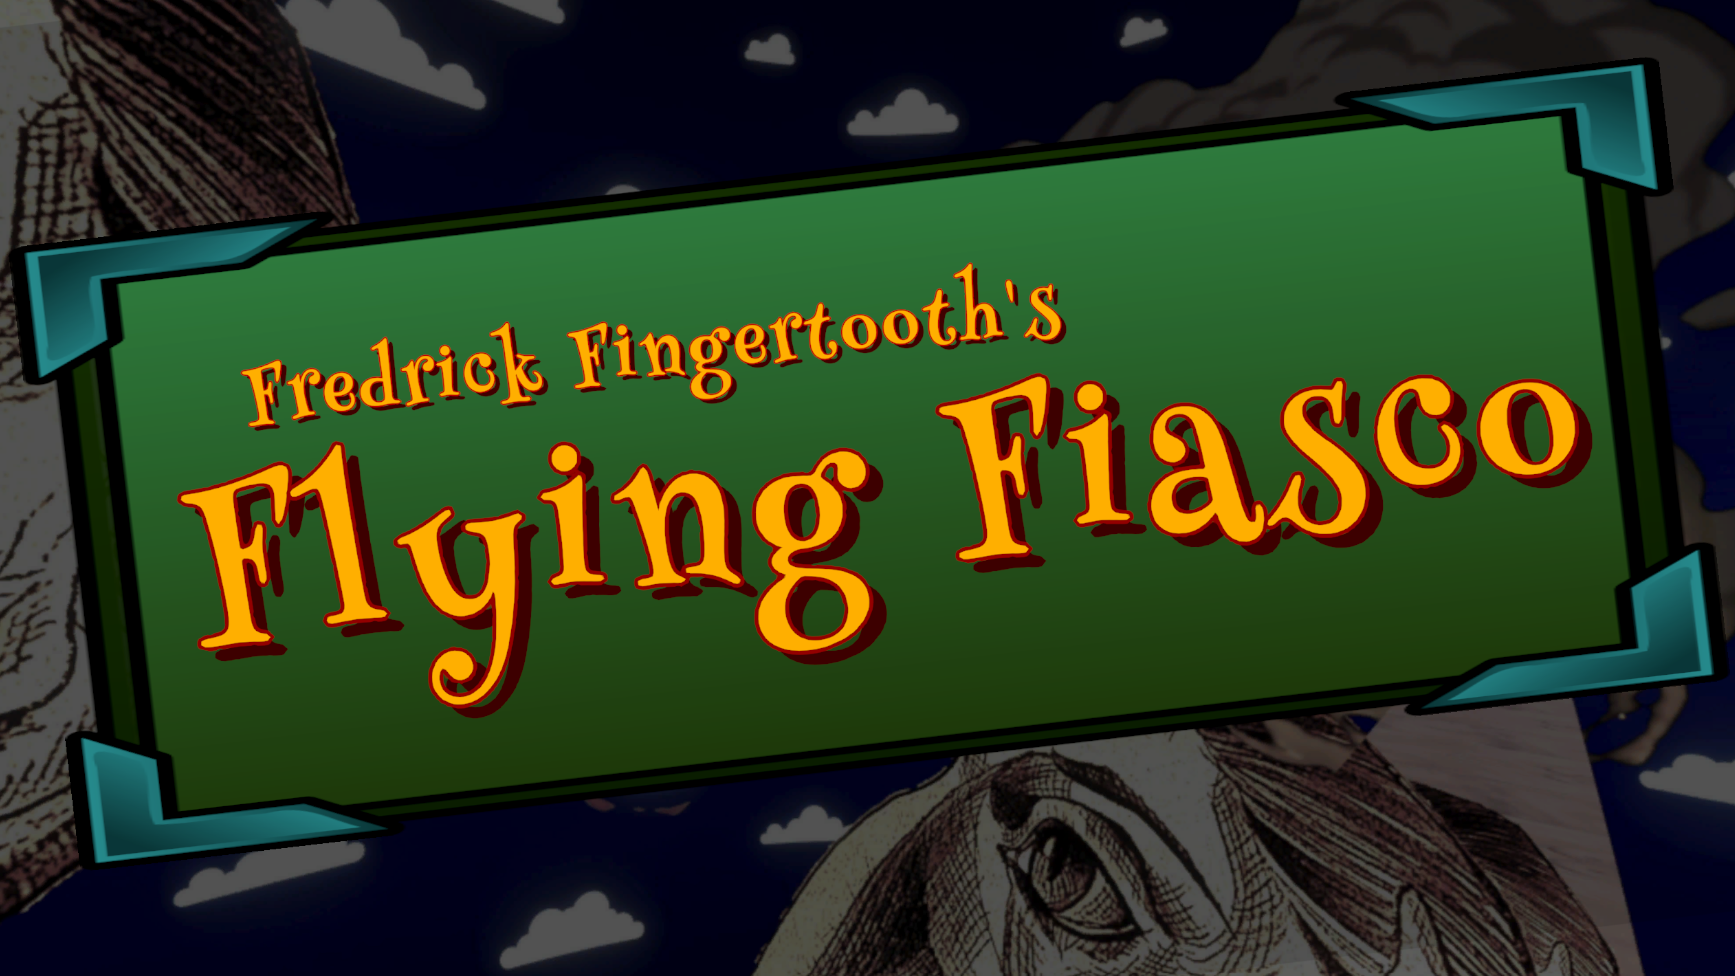 Fredrick Fingertooth's Flying Fiasco